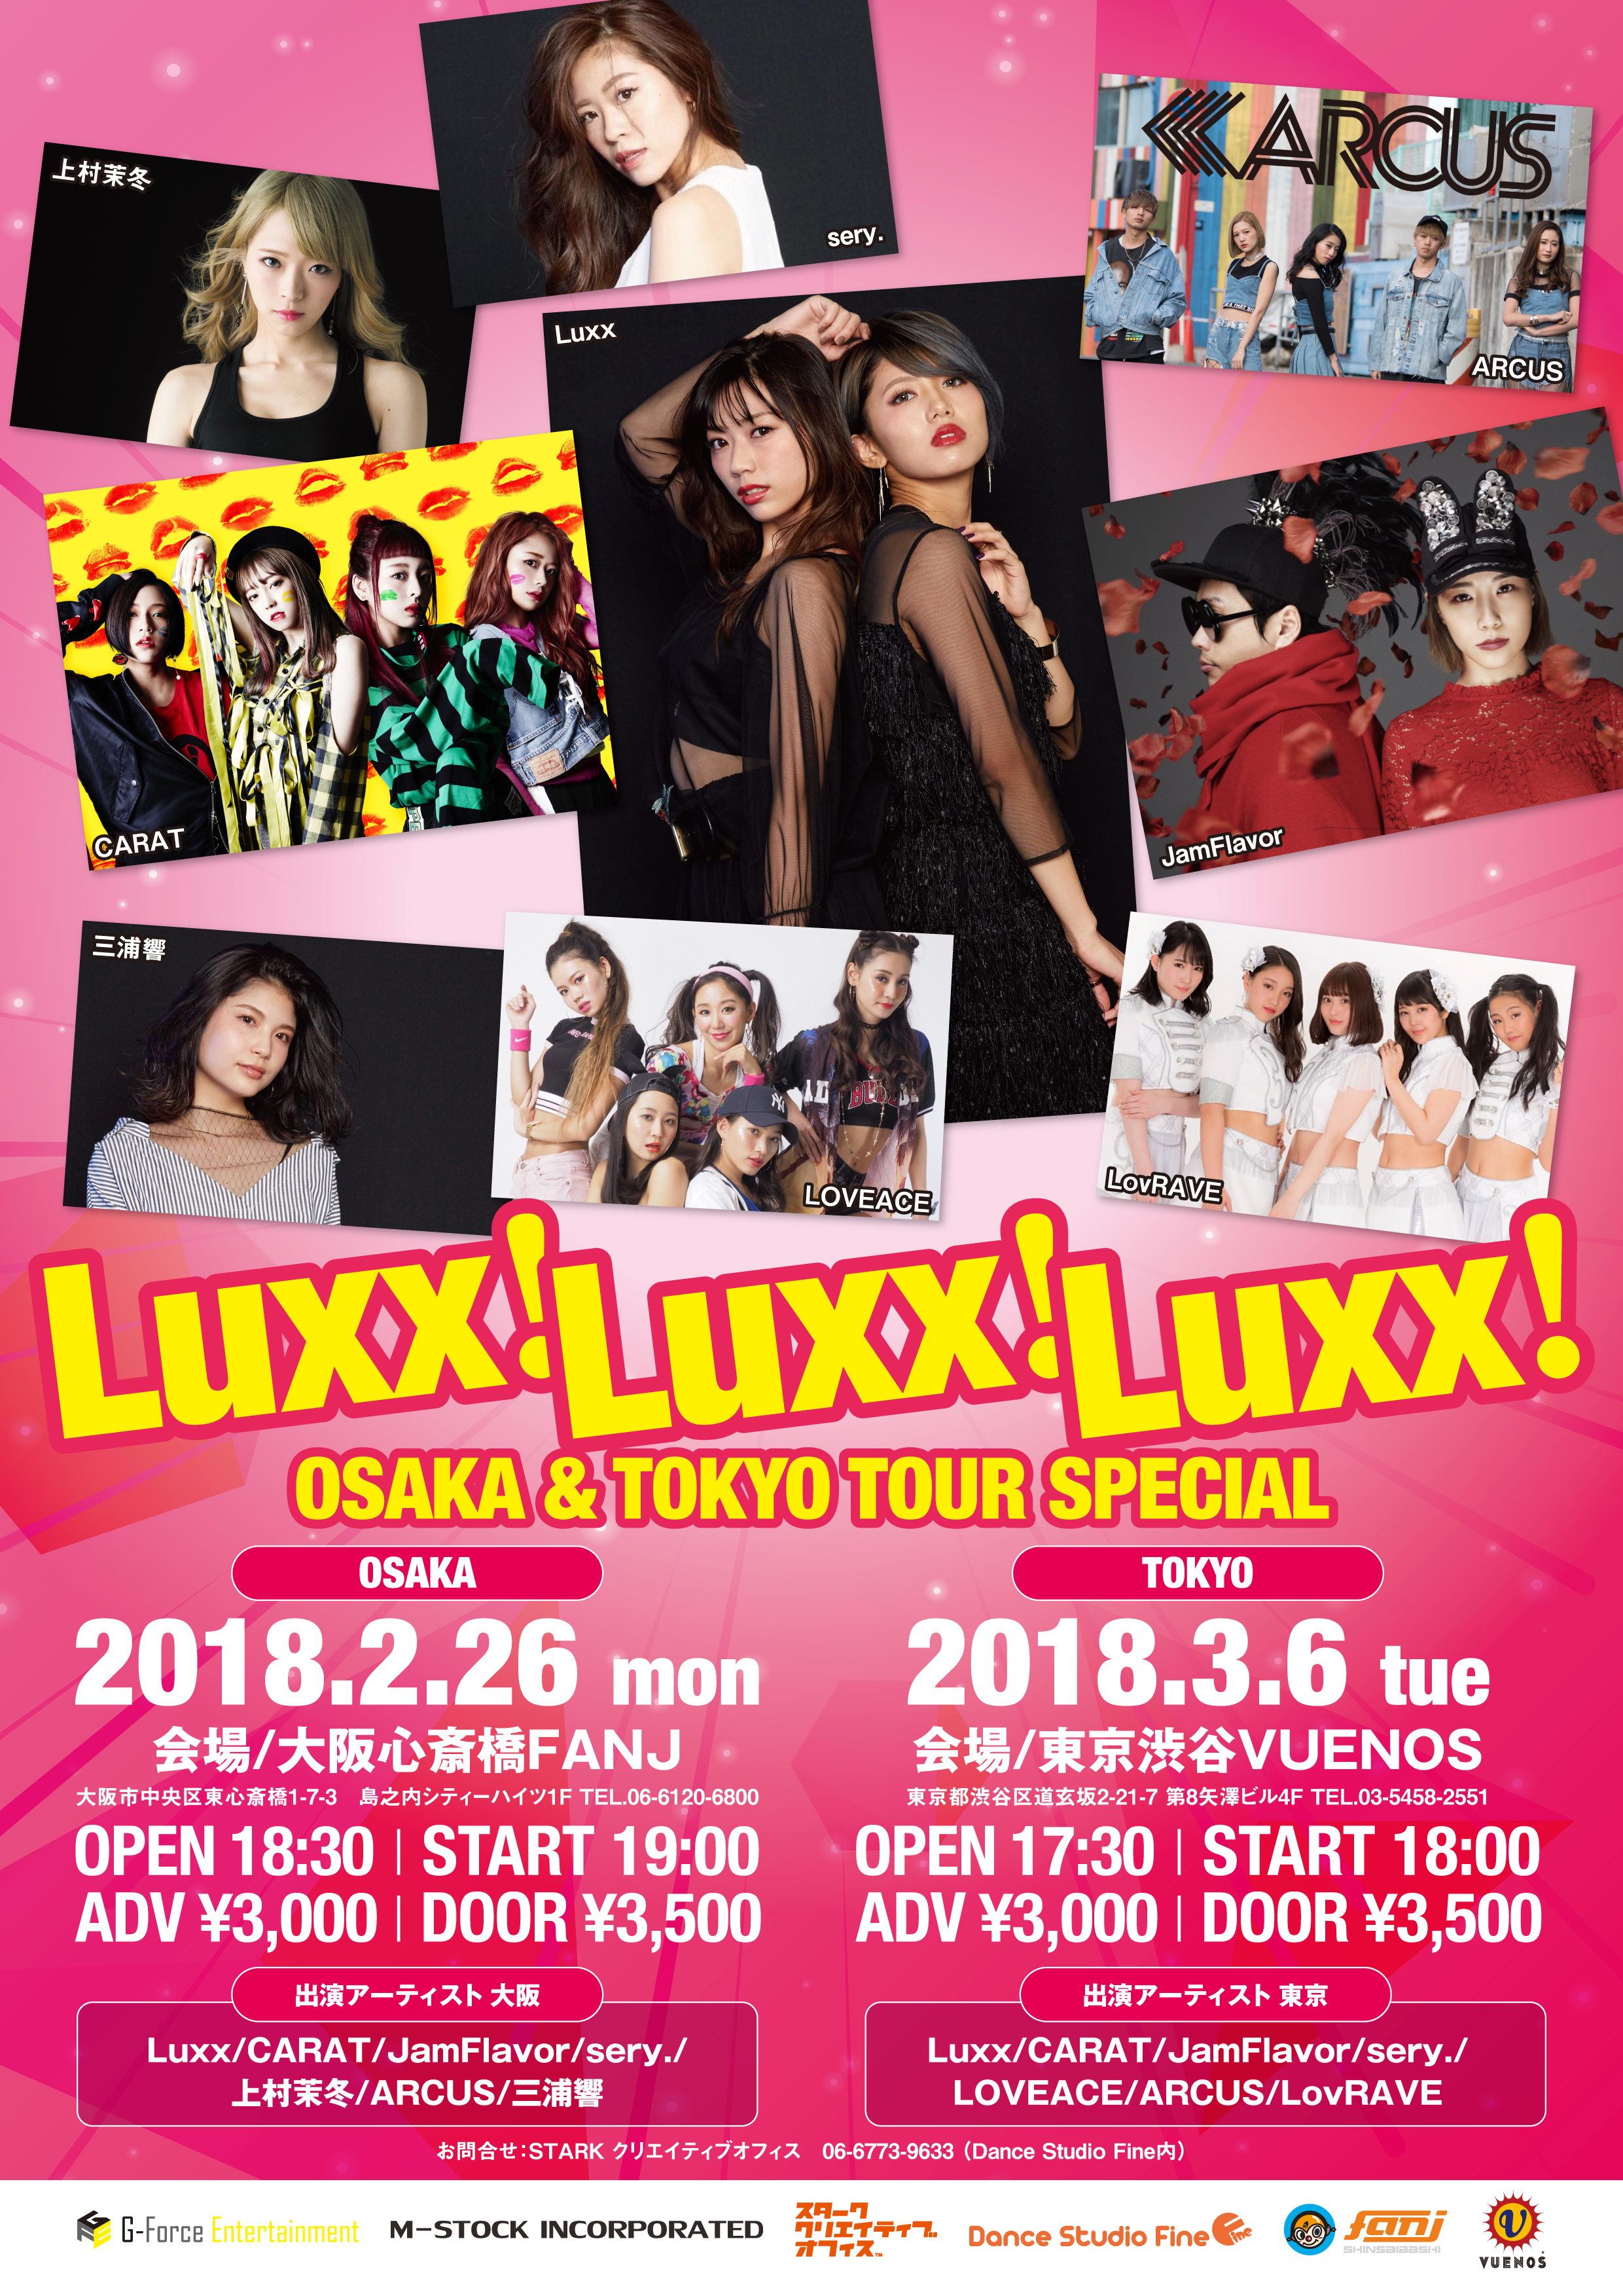 Luxx! Luxx! Luxx! 大阪東京ツアー